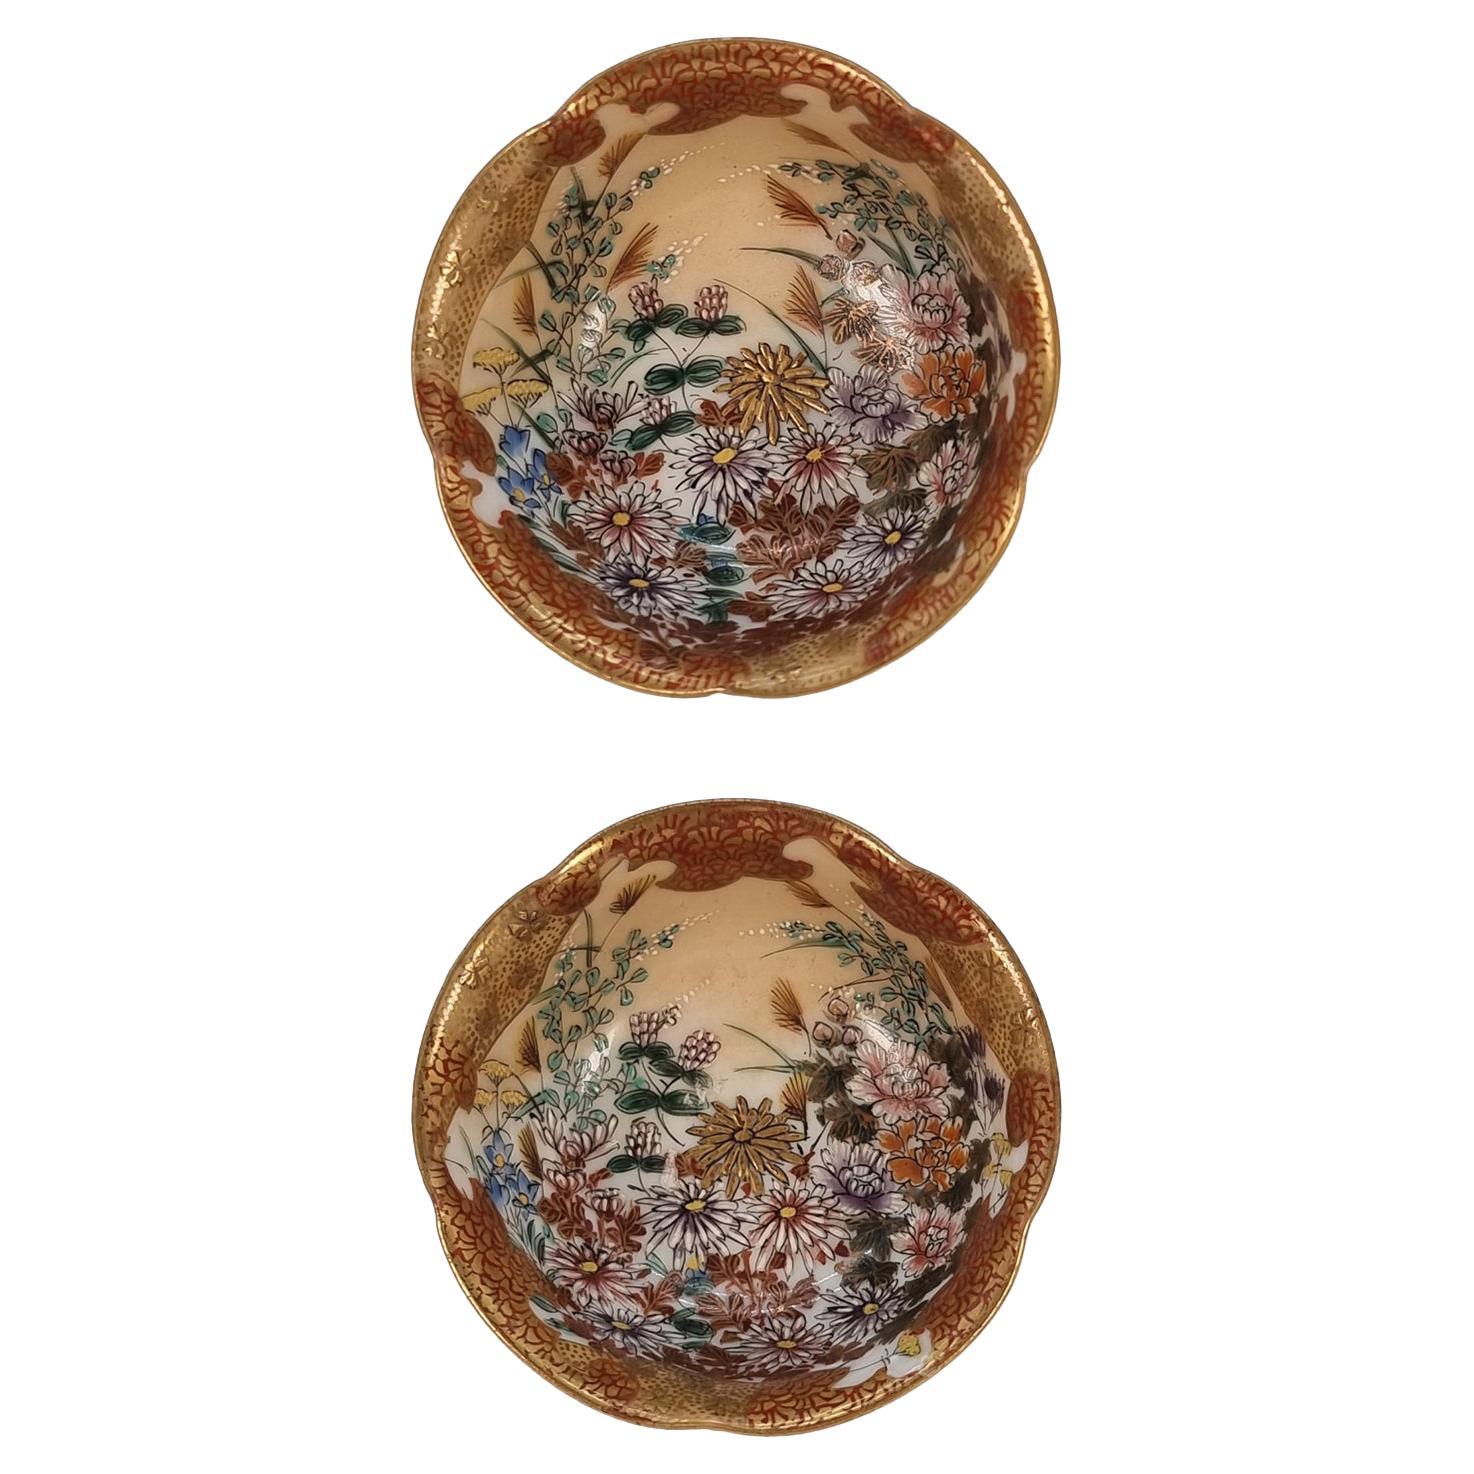 Zwei japanische Miniatur-Porzellanschalen aus der Meiji-Periode (19. Jh.) aus Kutani-Ware